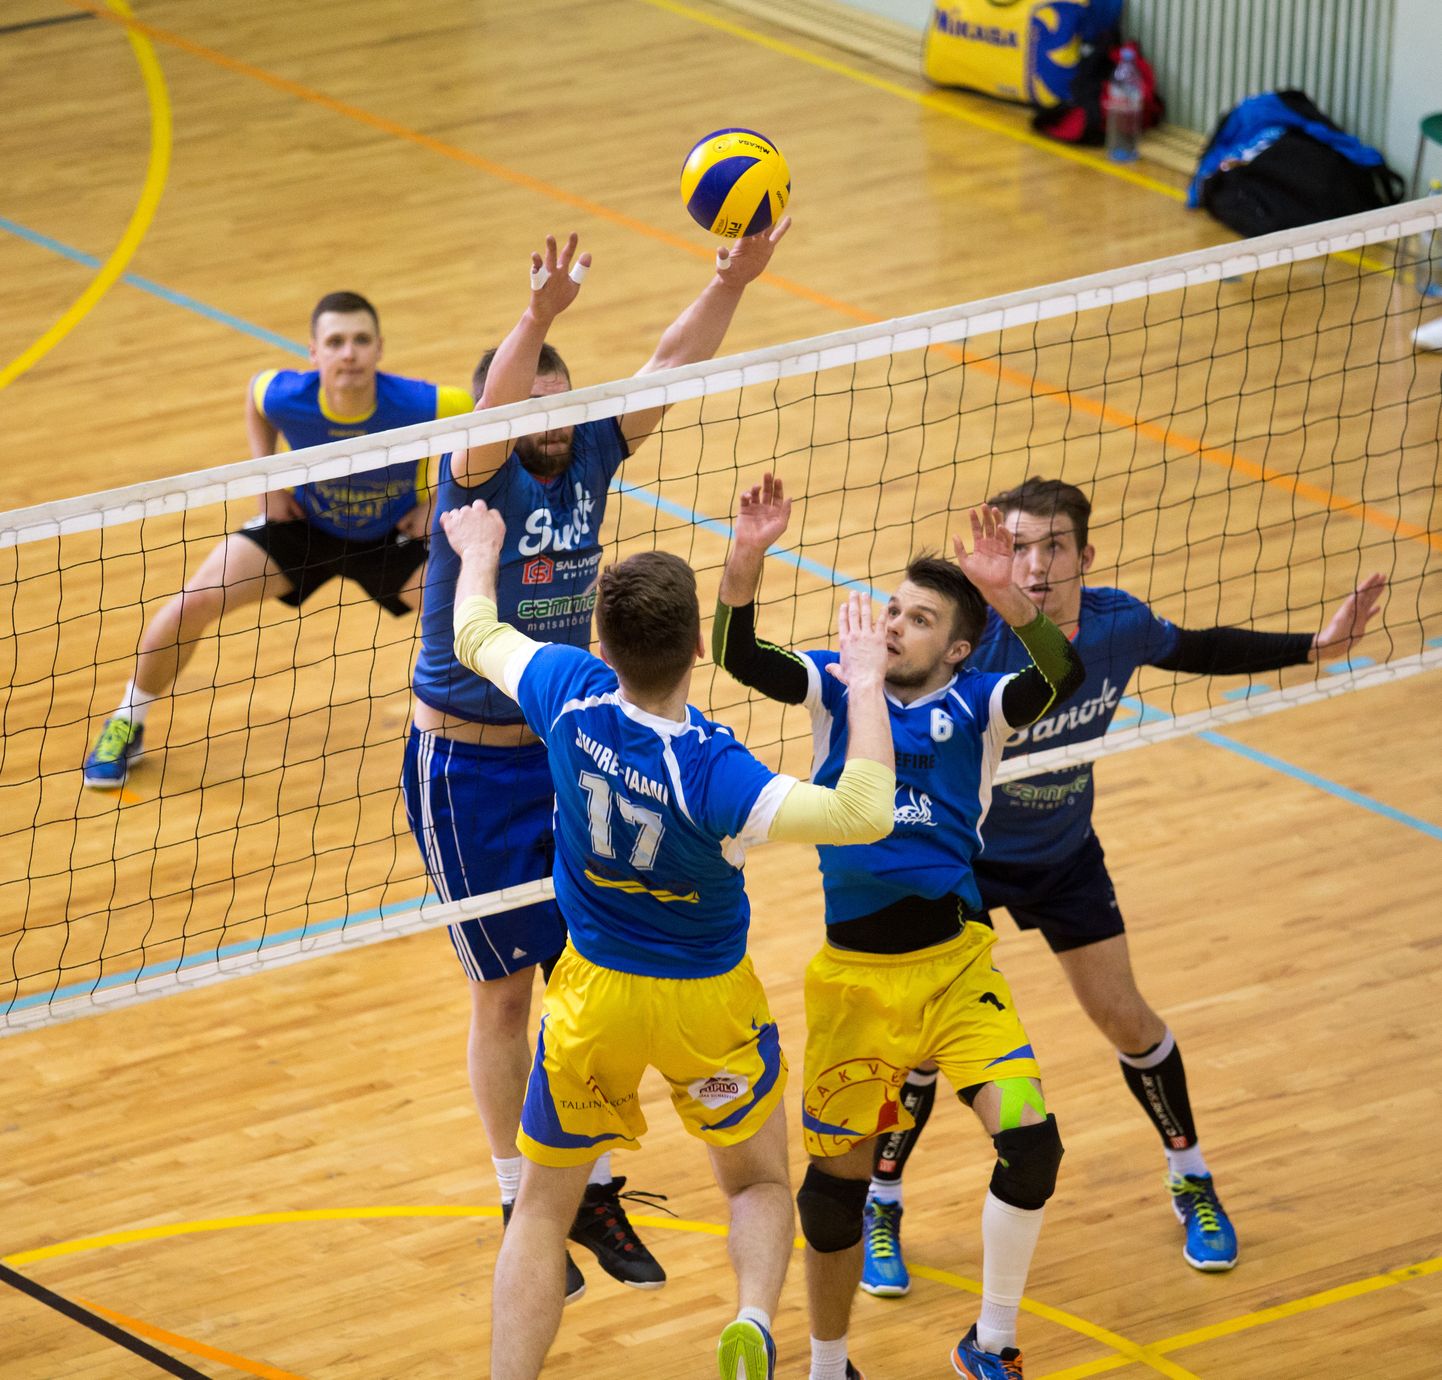 Läinud aastal maakonna meeste võrkpalli turniiri finaalis alistas Suure-Jaani meeskond Viljandi valla esinduse.